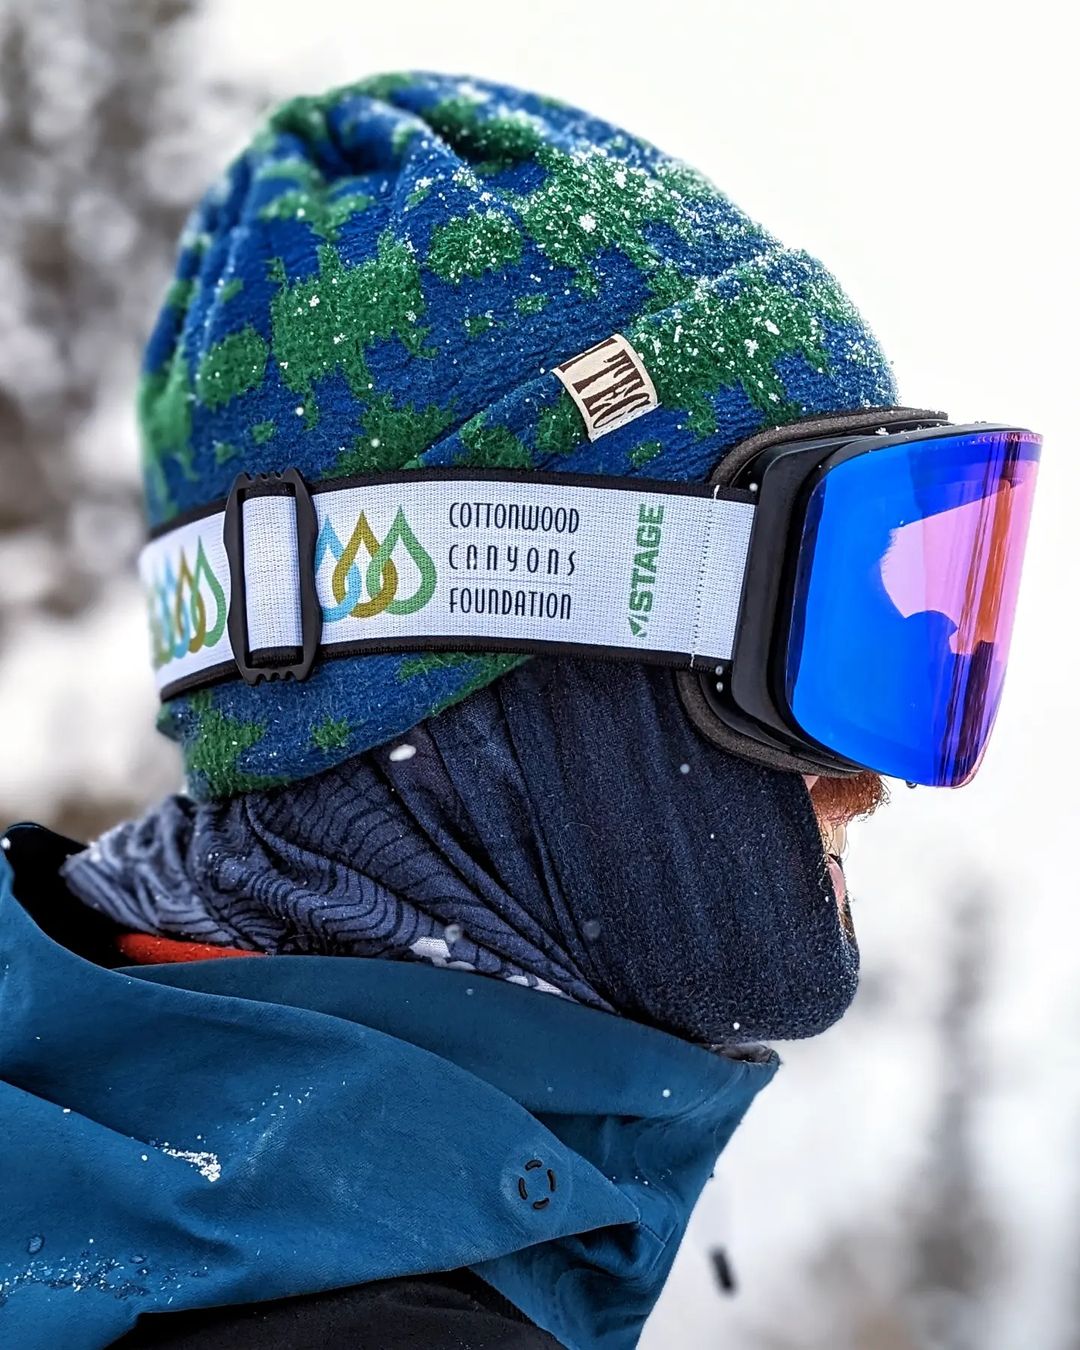 Cottonwood Canyons Foundation Propnetic - Magnetic Ski Goggle + Bonus Lens